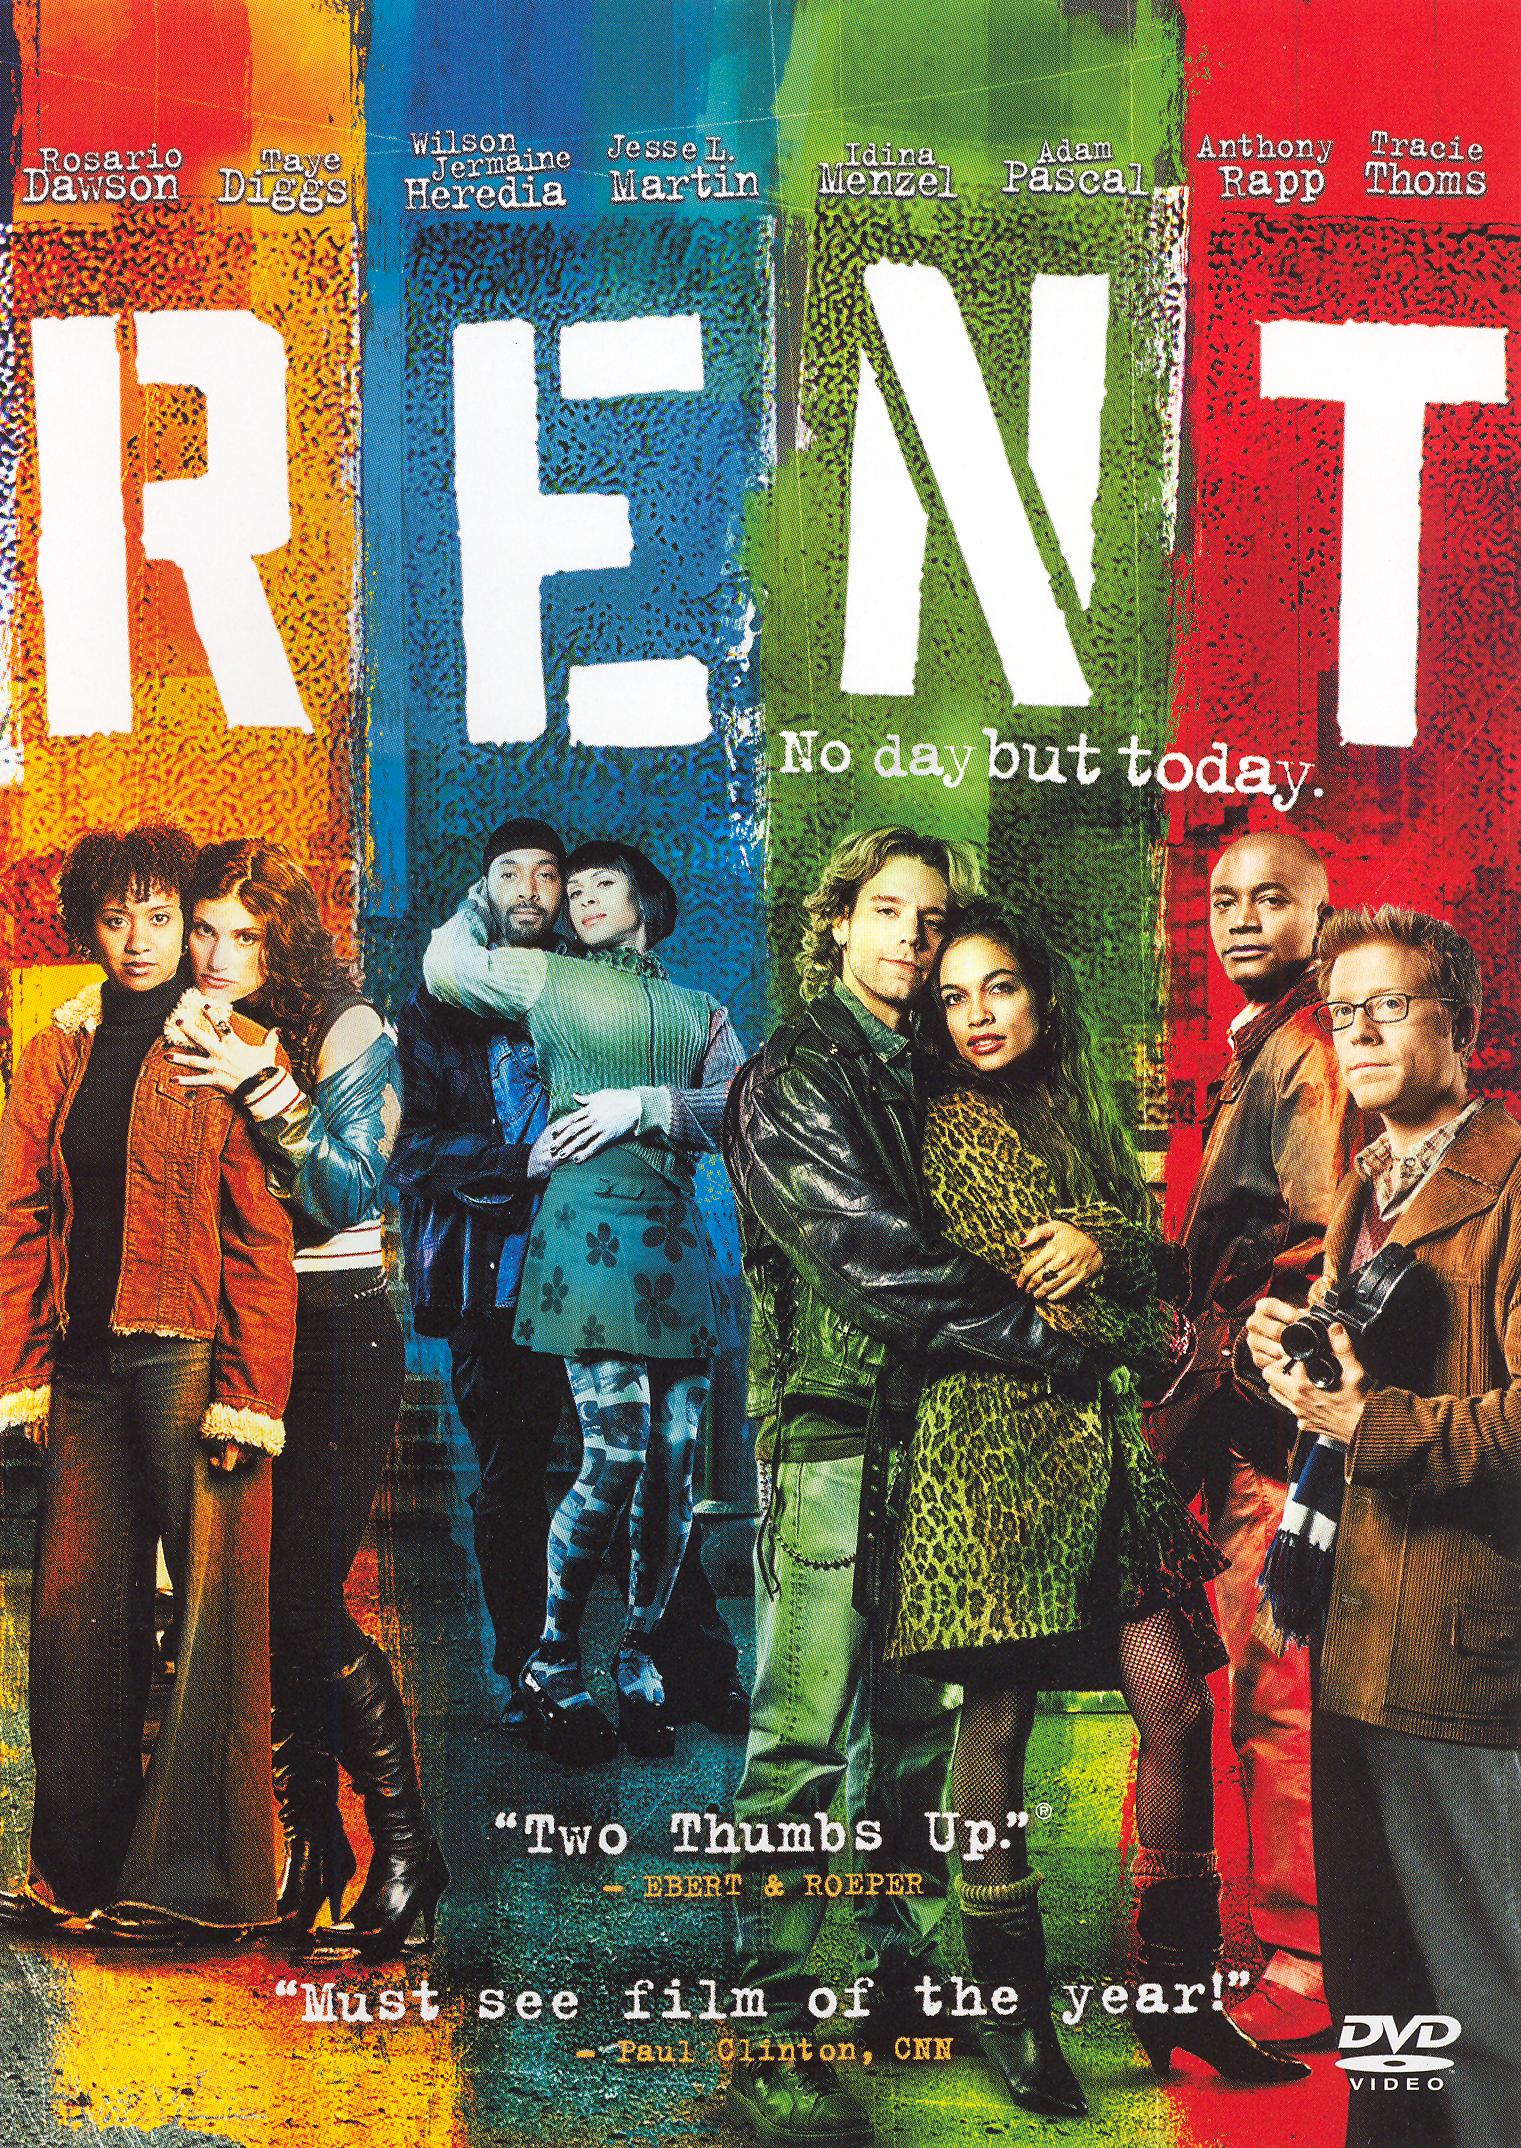 Rent [WS] [DVD] [2005] - Best Buy